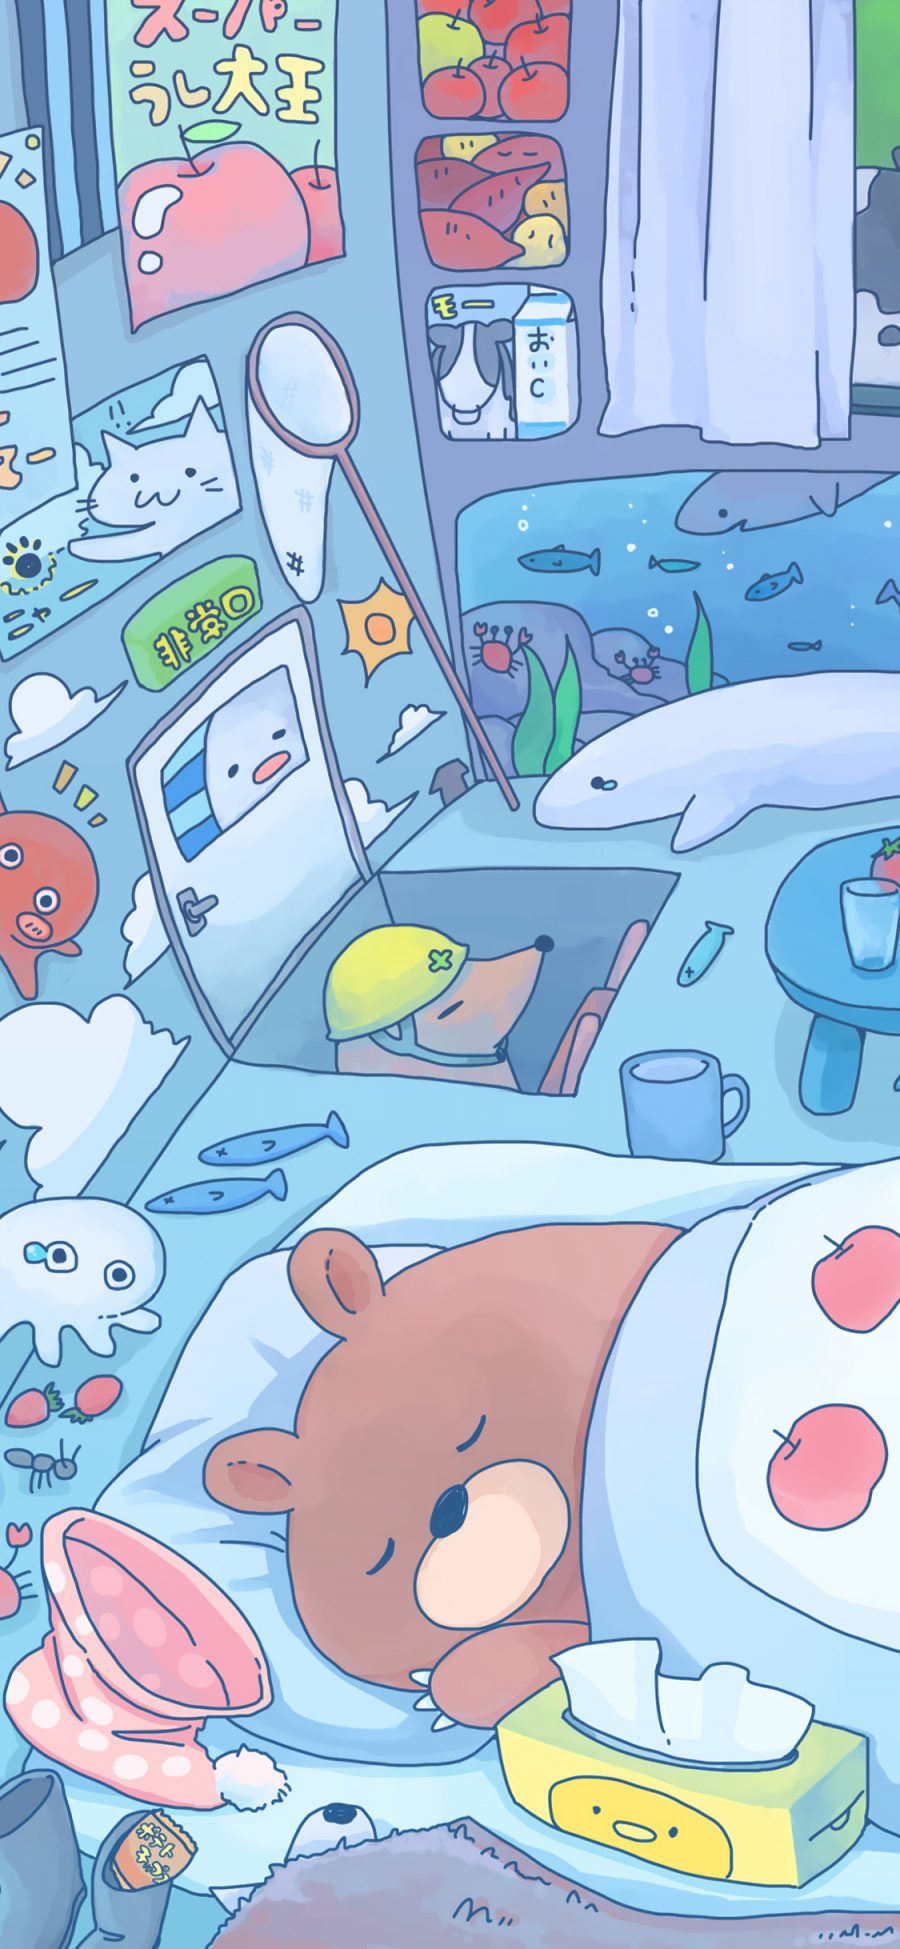 [2436×1125]房间 小熊 睡觉 卡通 苹果手机动漫壁纸图片